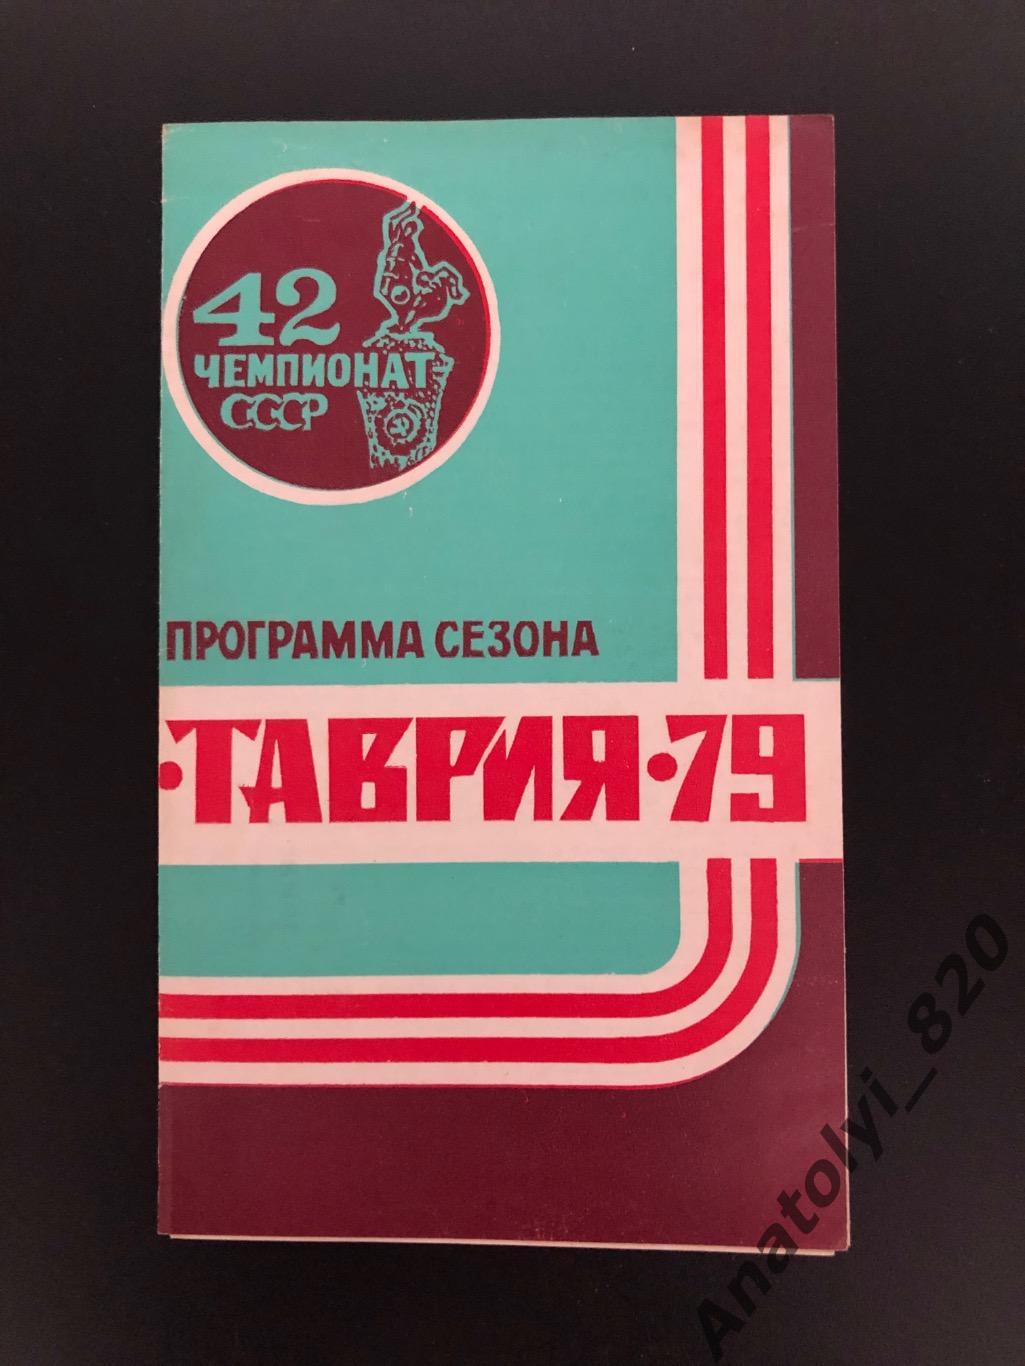 Таврия Симферополь 1979 год программа сезона